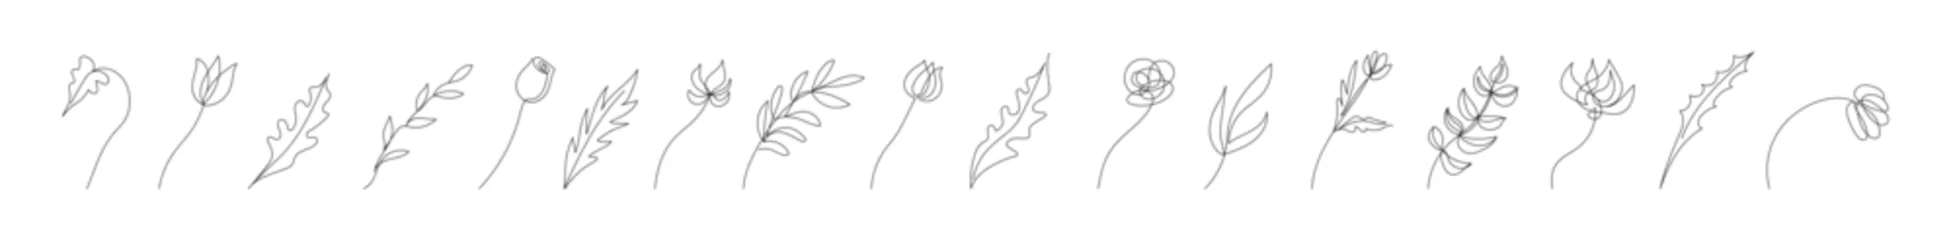 Crédence de cuisine en verre imprimé Une ligne Collection of floral design elements in continuous one line drawing style. Flowers, plants, leaves, branches. Line art. White backdrop. For print, postcard, scrapbooking, coloring book.